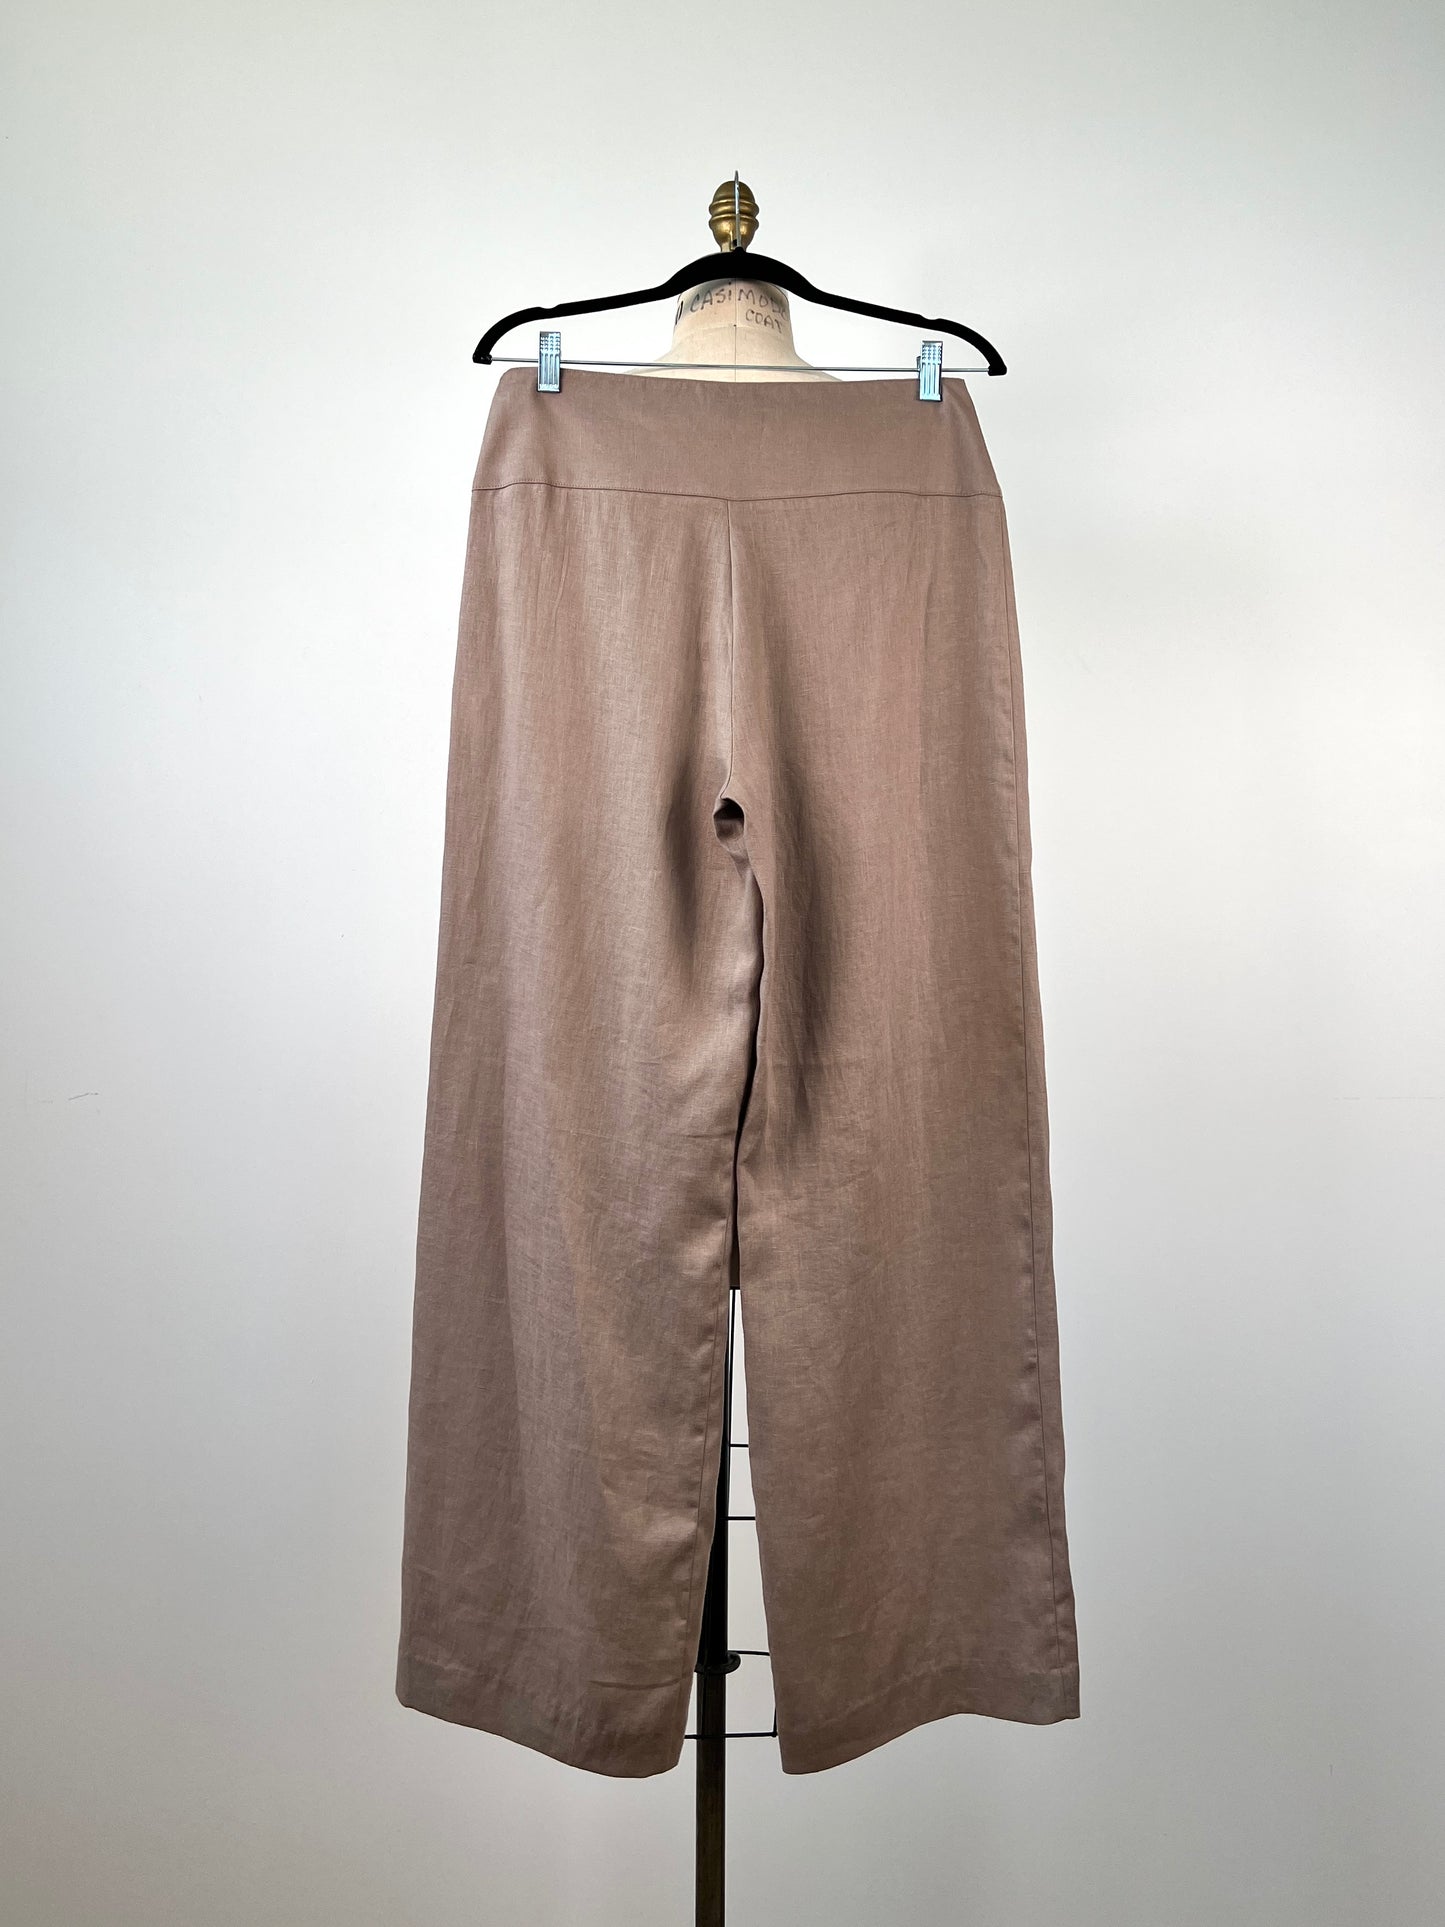 Pantalon en lin taupe à coupe droite (XS à L)